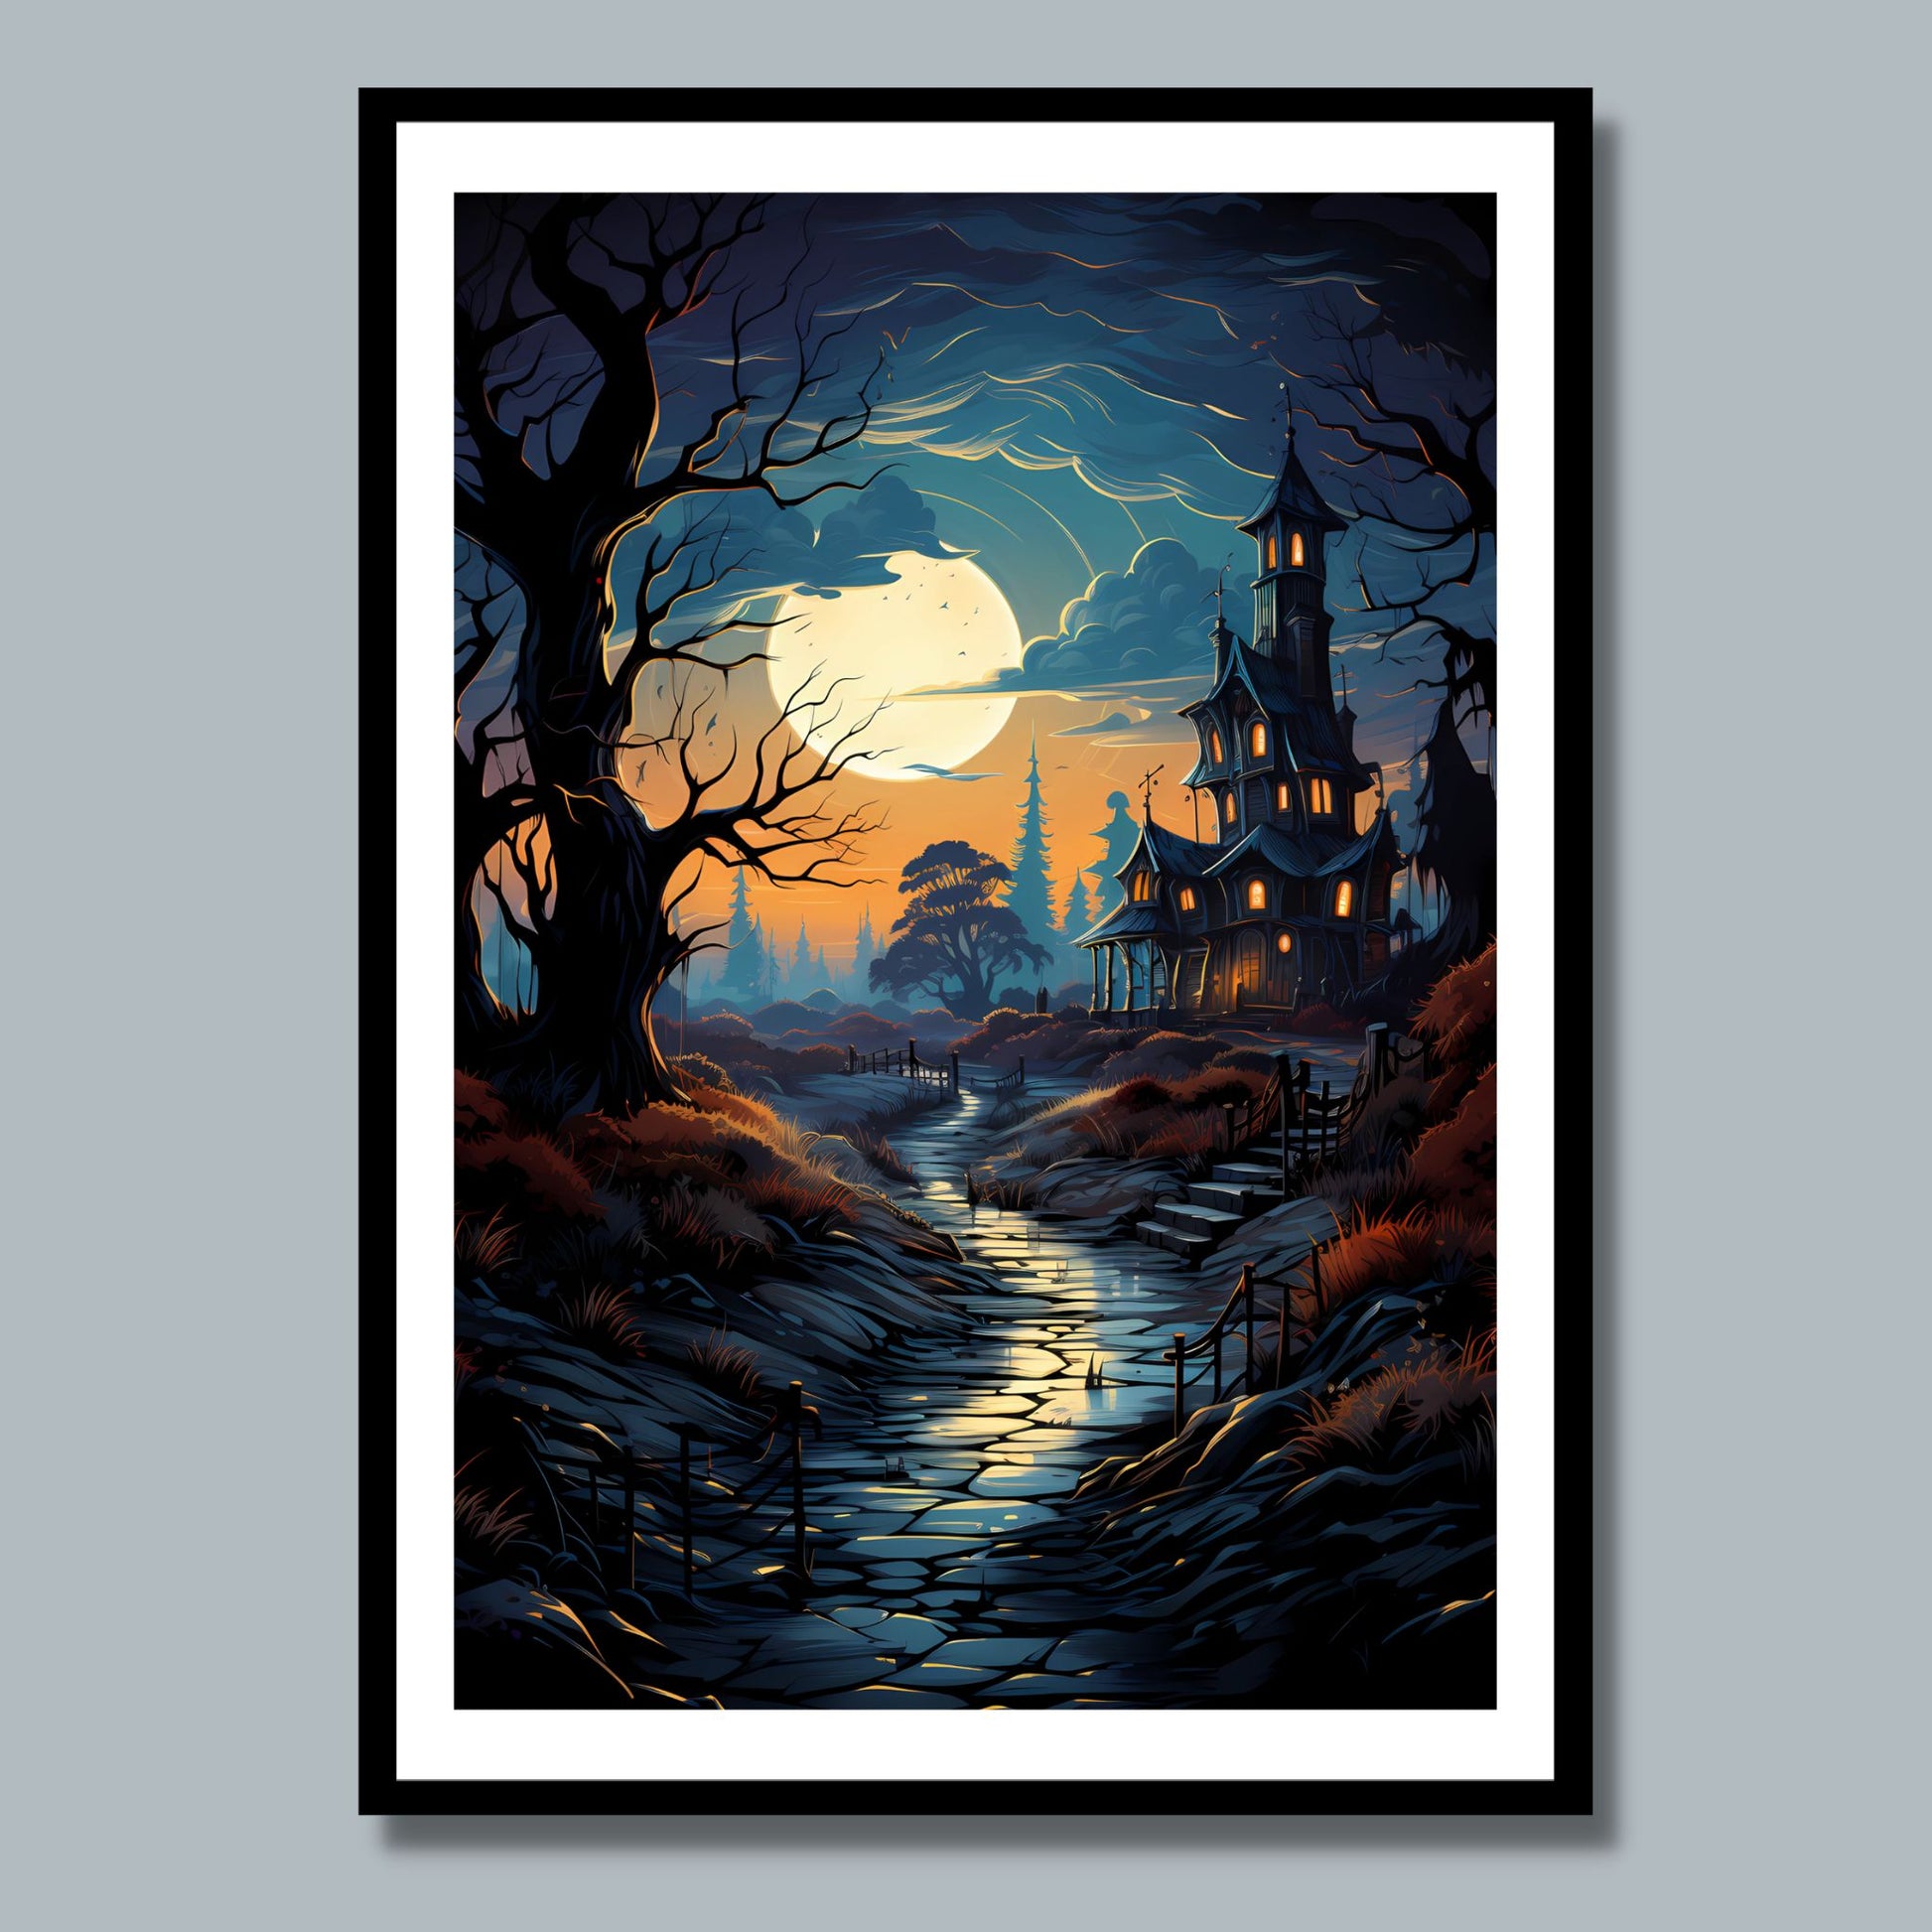 Creepy plakat med motiv av Halloween slott ved fullmåne. Motivet viser nattmørke og lys i vinduene. Bildet som har en hvit kant, er rammet inn  i sort ramme og henger på en vegg.